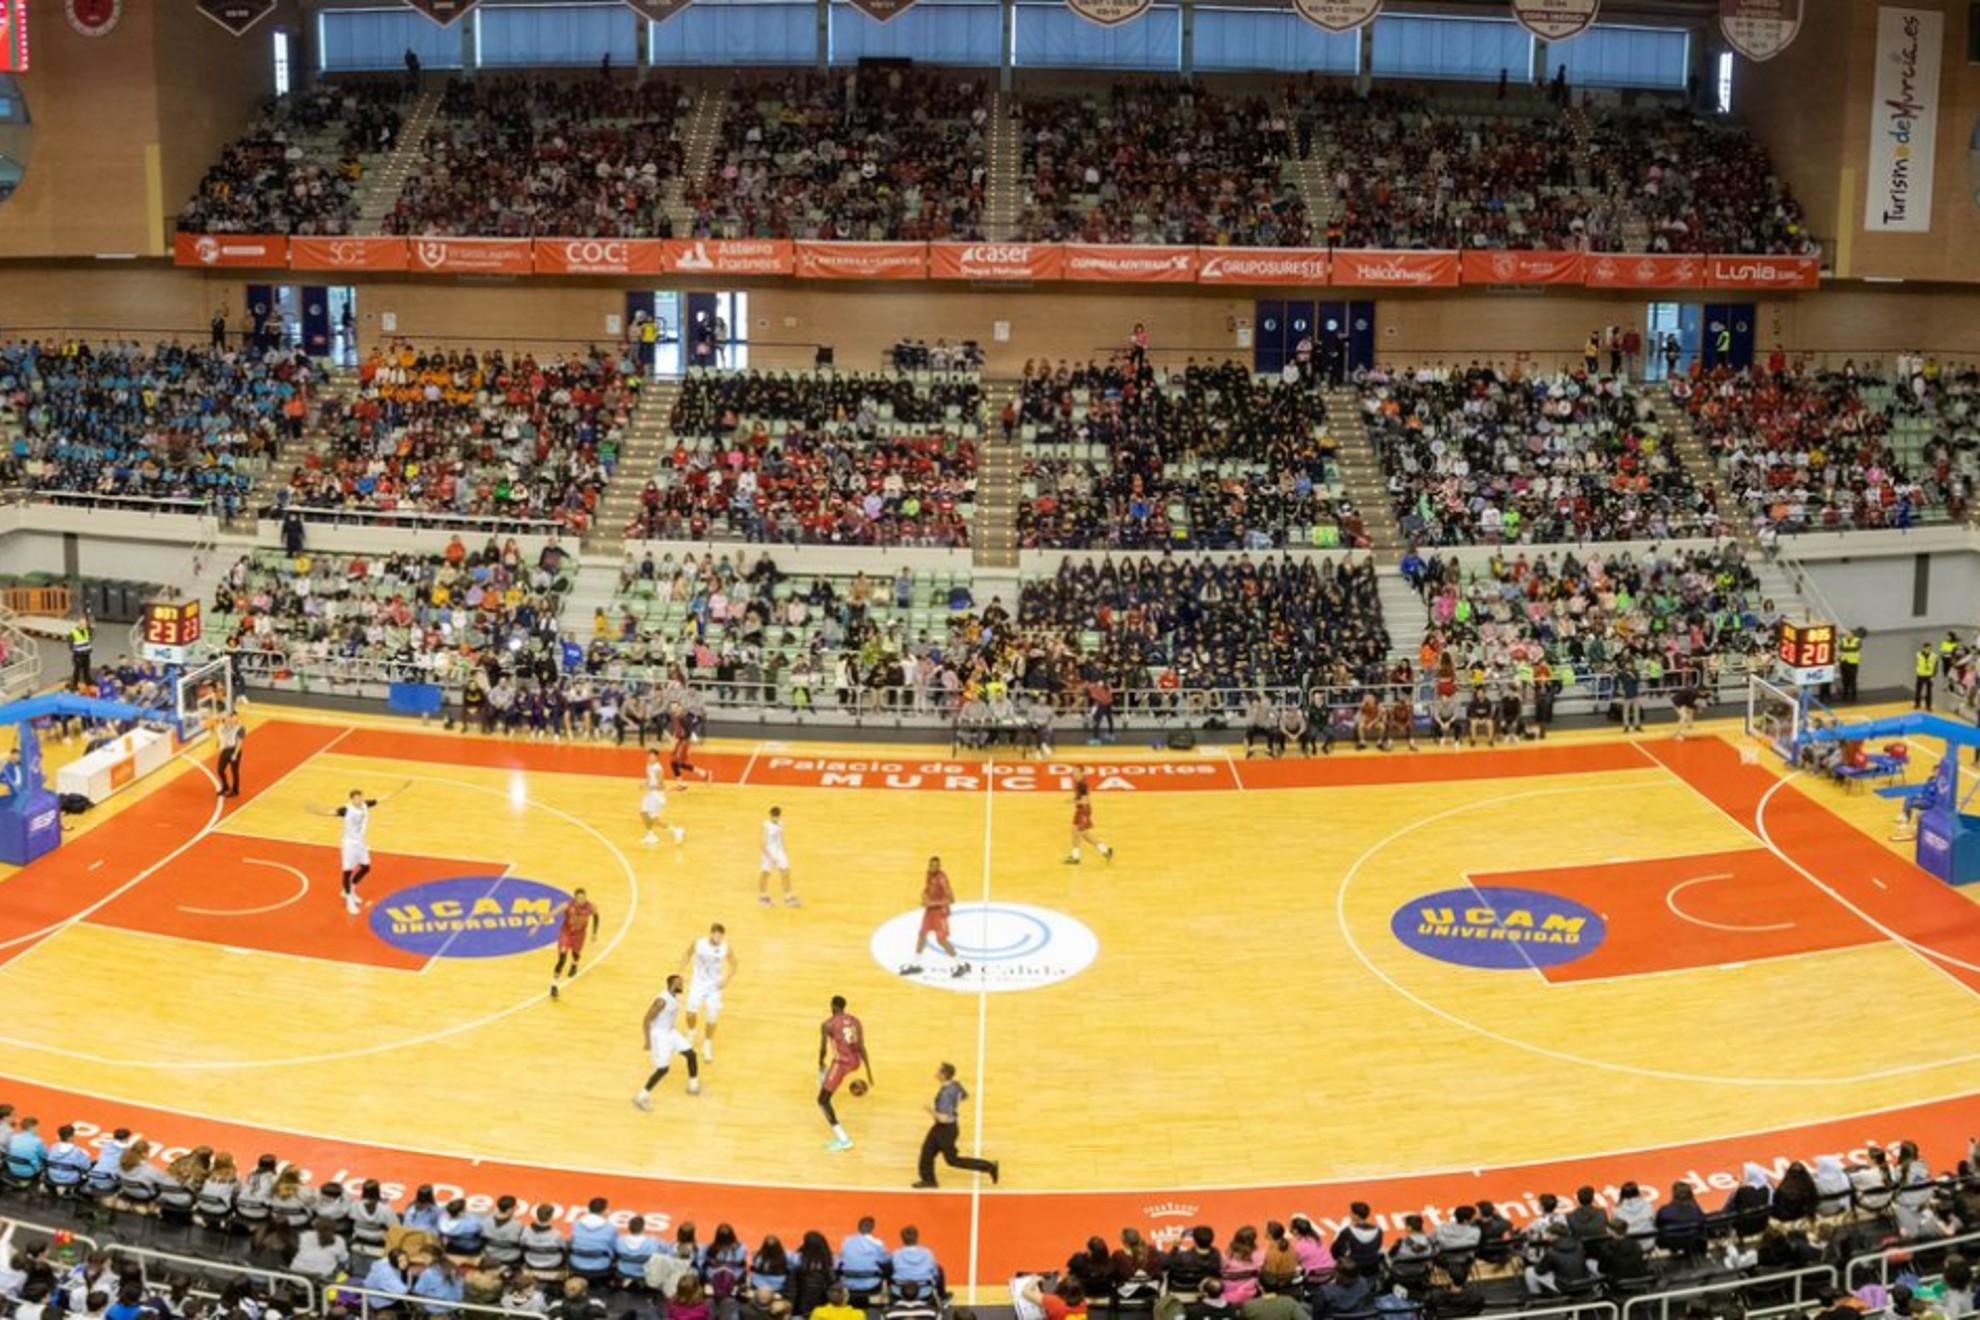 Panorámica del Palacio de Deportes de Murcia durante el encuentro.